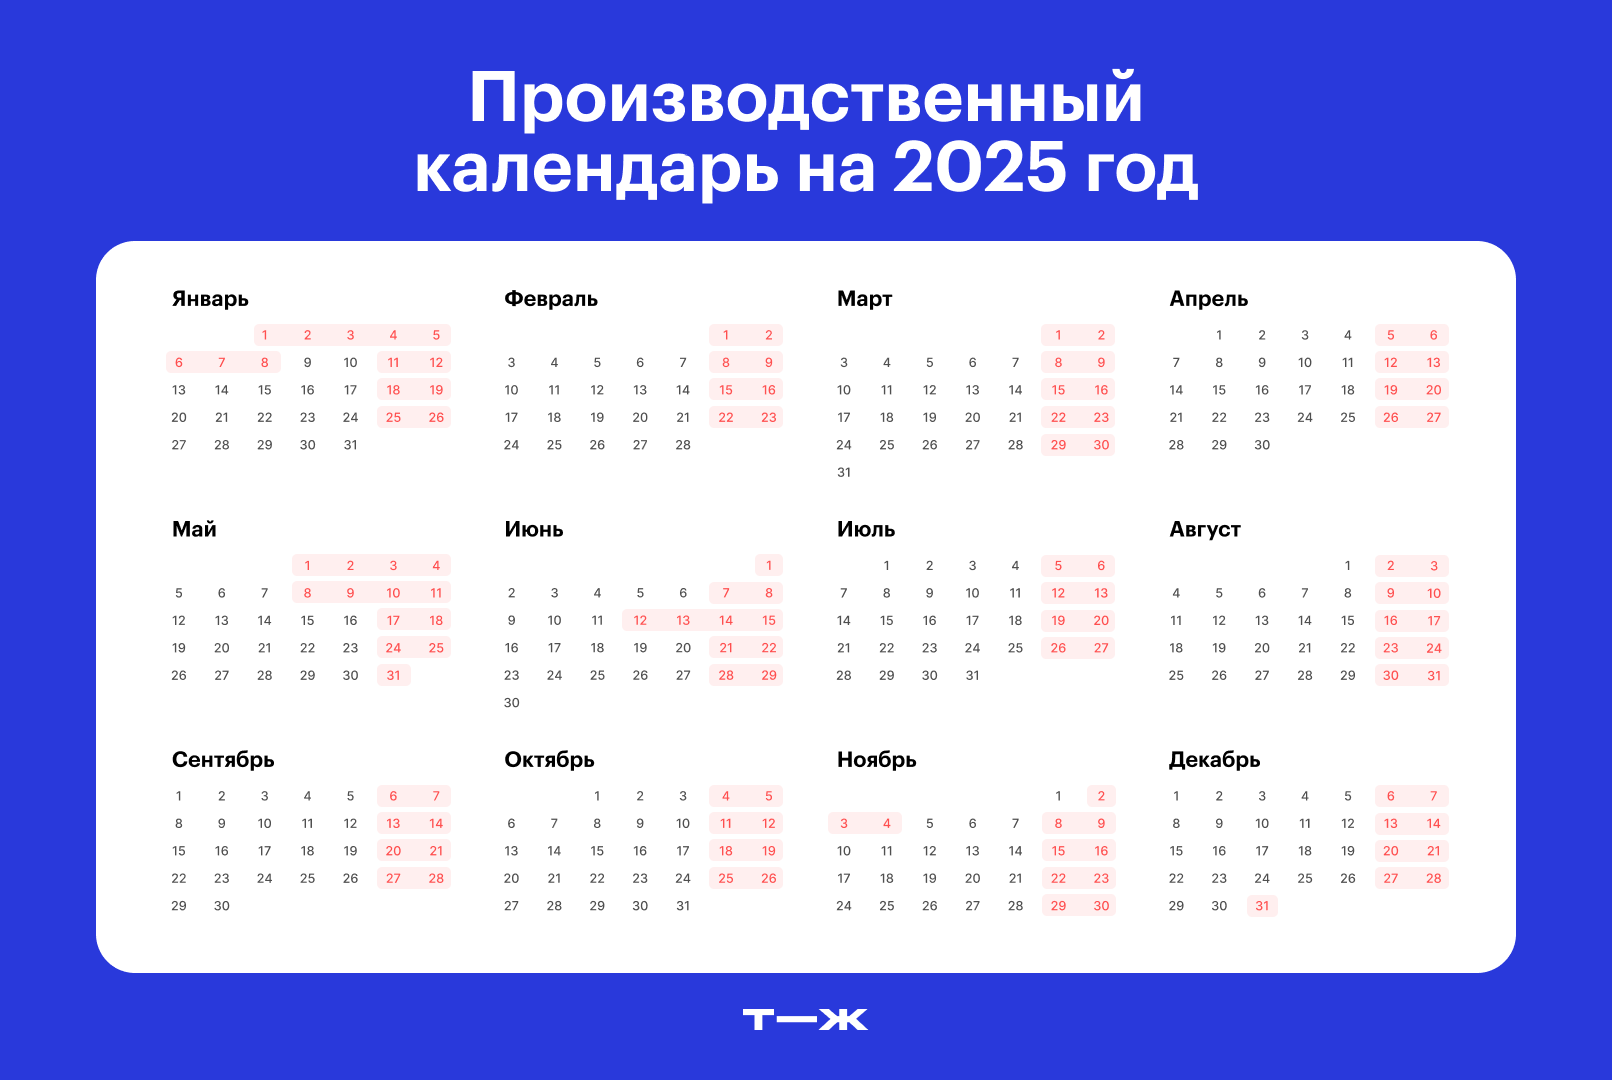 Календарь 2025 года будет выглядеть так, если предложения министерства примут